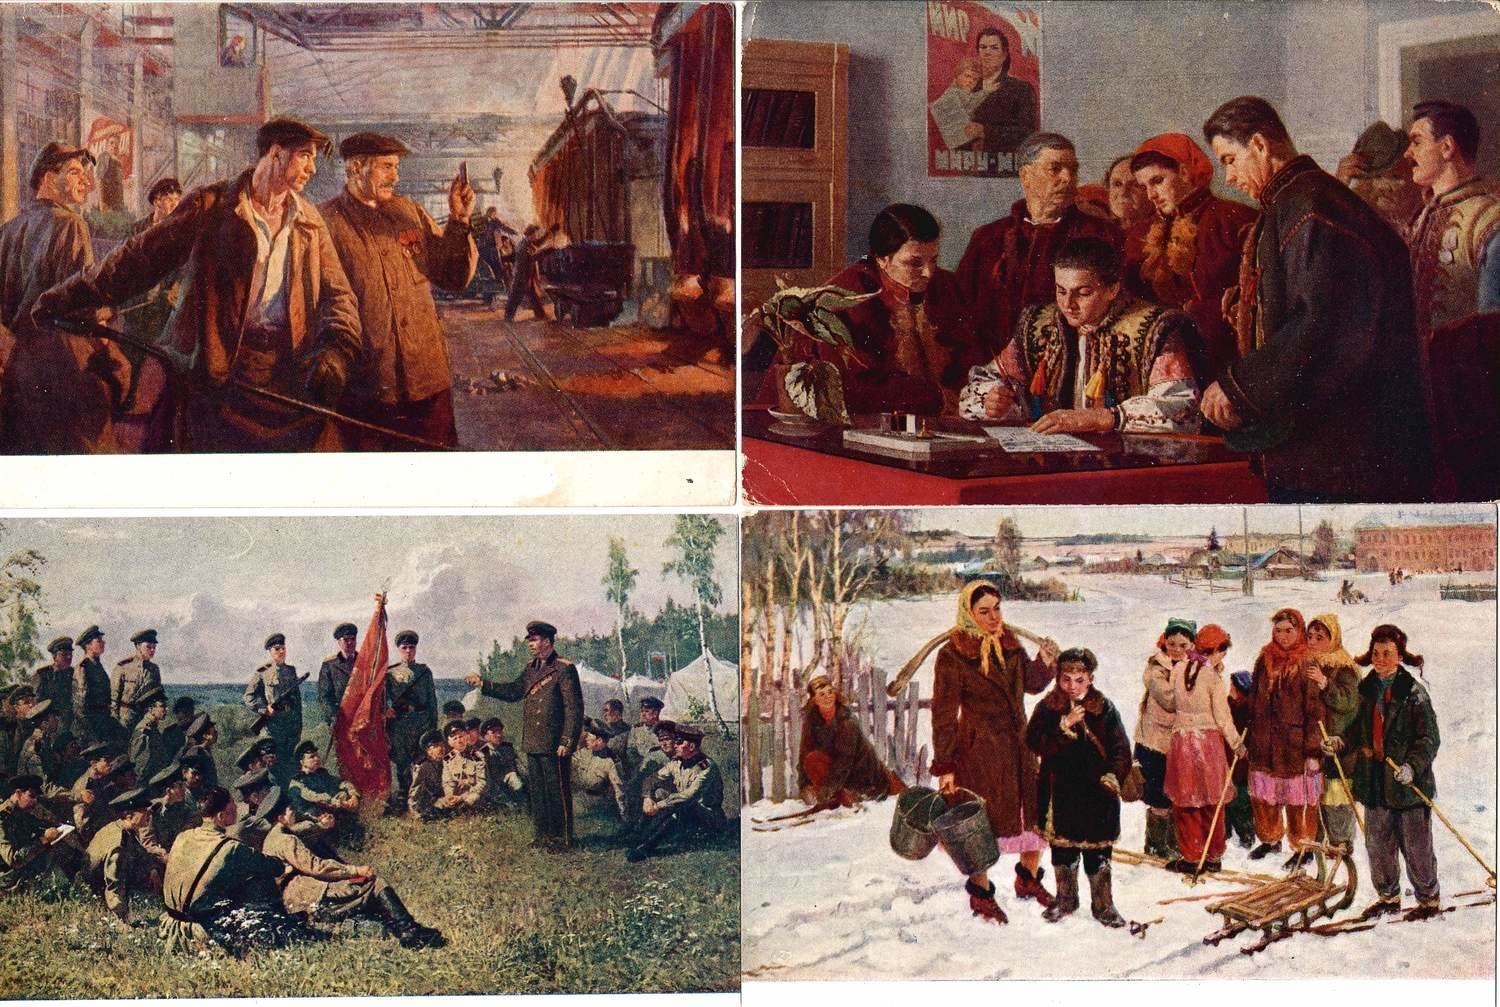 13 открыток «Соцреализм в живописи». 1940-е - 1960-е годы.